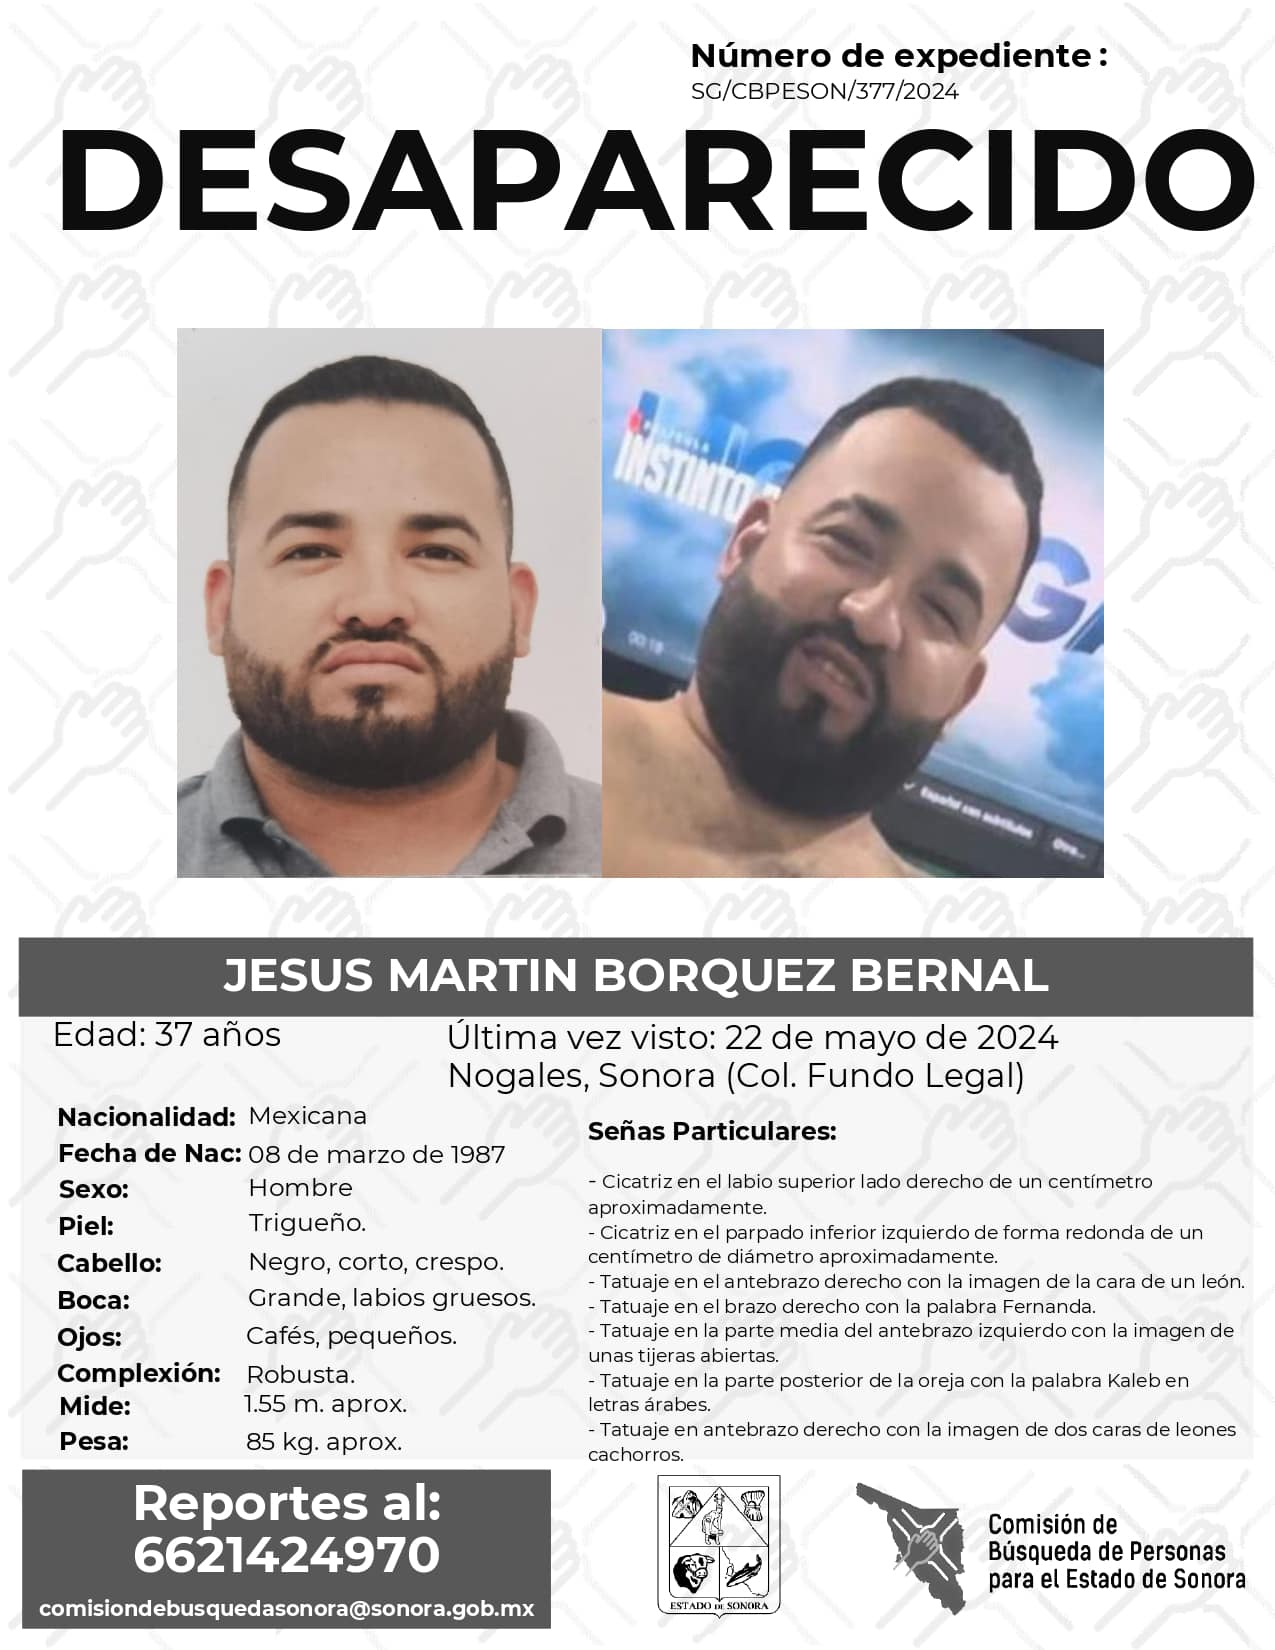 JESUS MARTIN BORQUEZ BERNAL - DESAPARECIDO